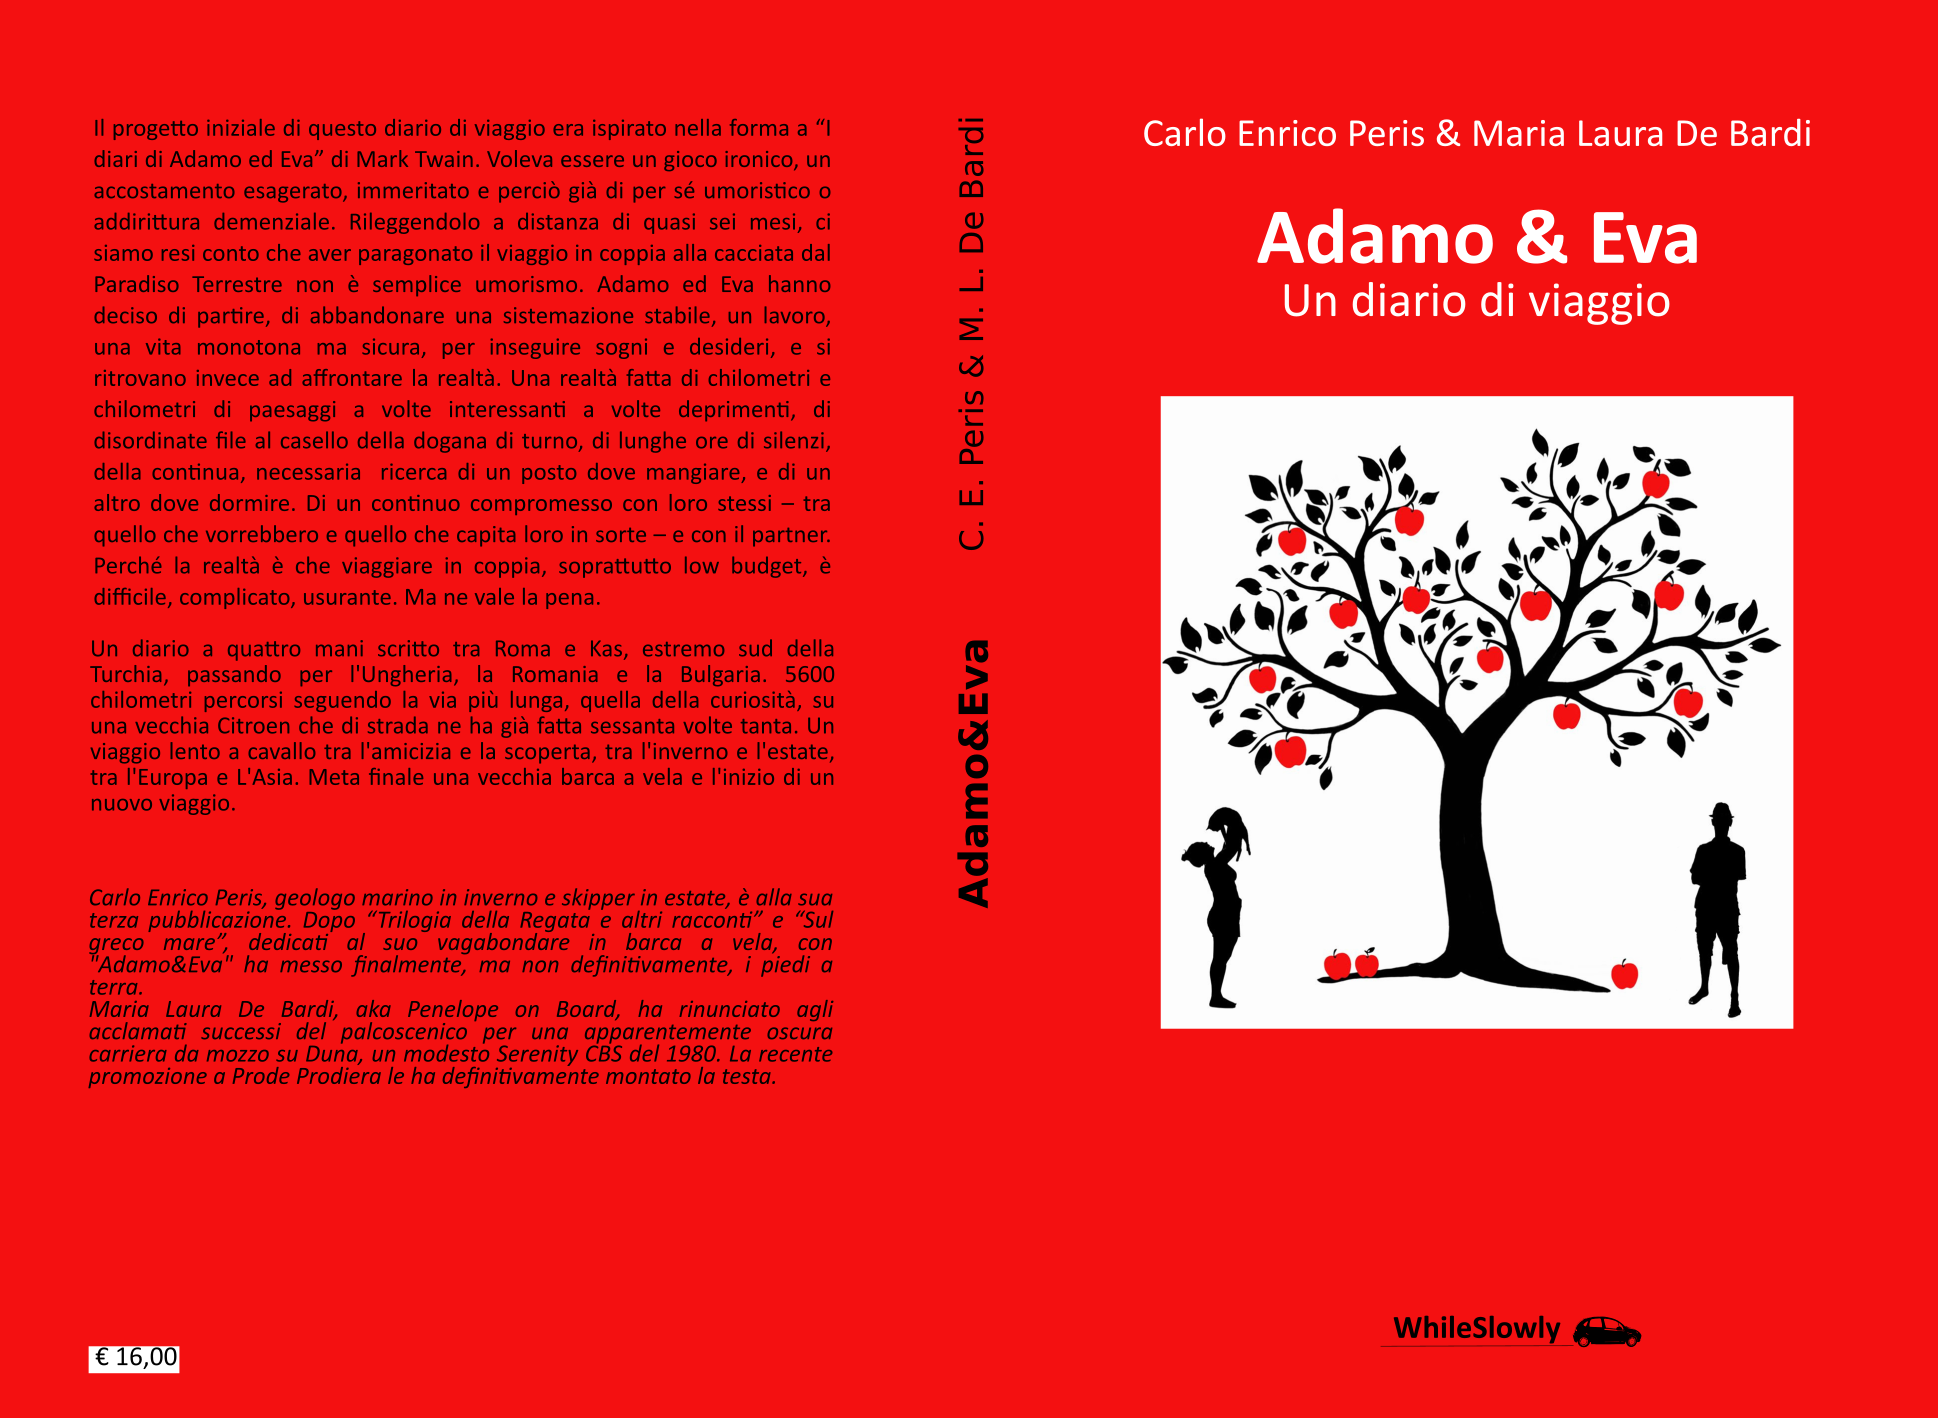 Adamo&Eva - Un diario di viaggio